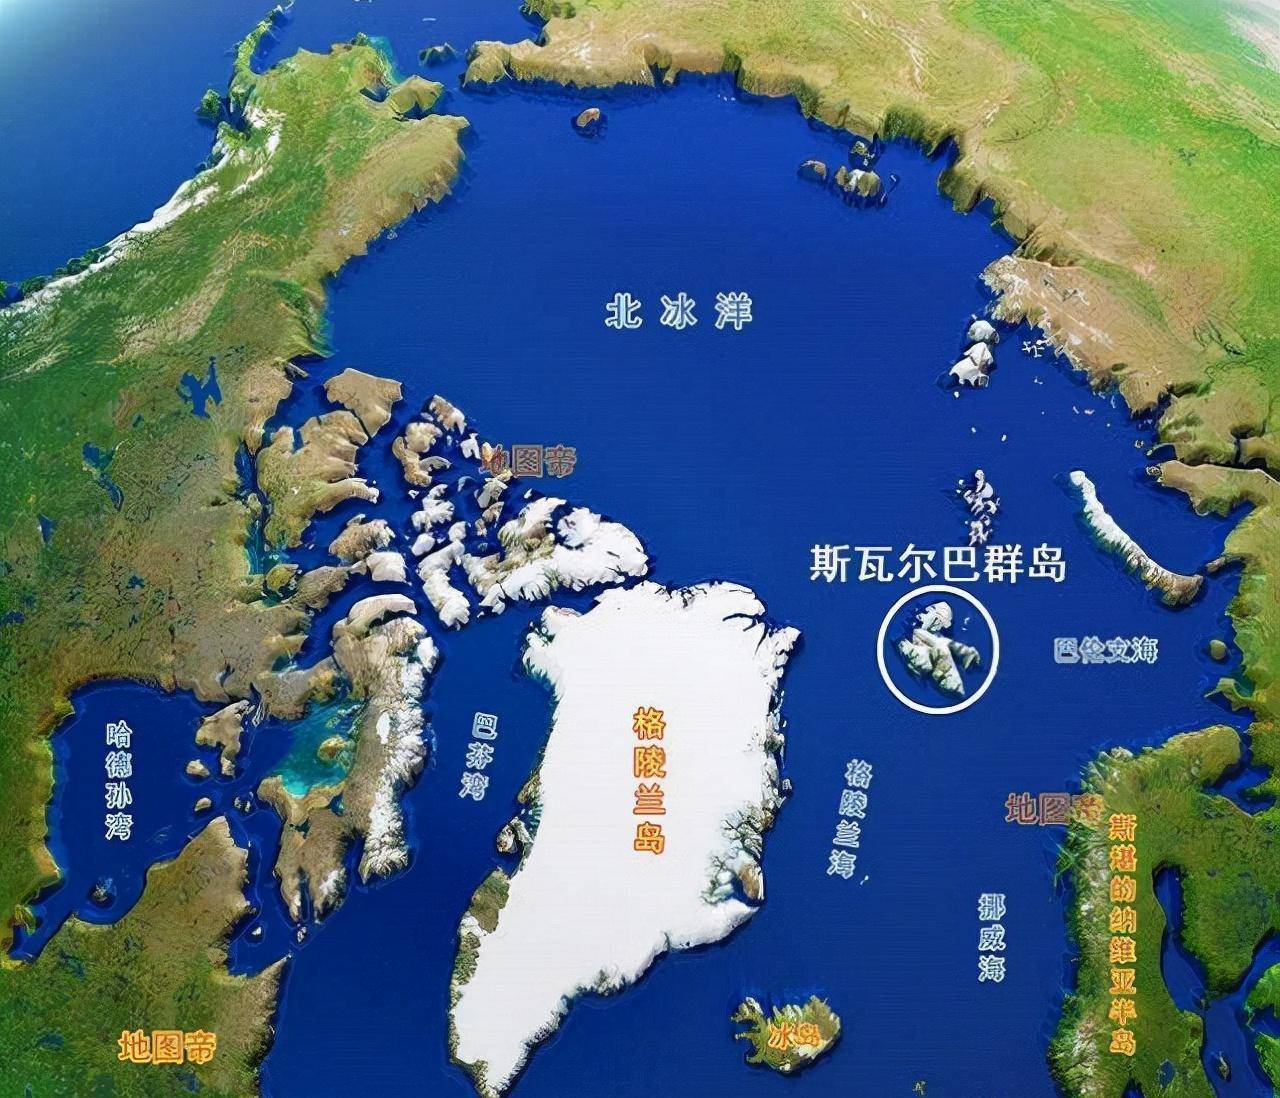 北地群岛地图图片